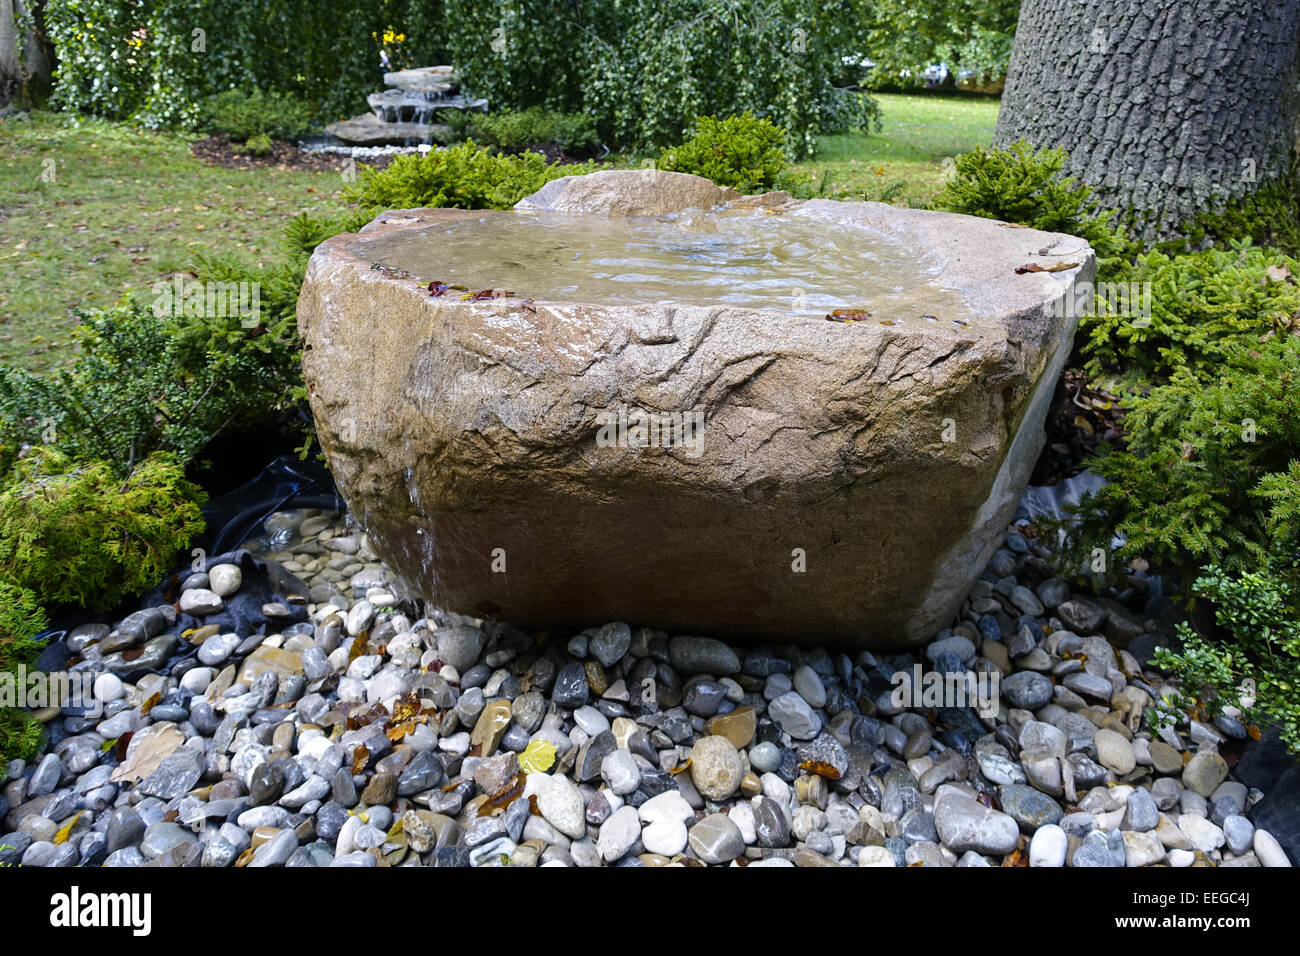 Steinbrunnen in Einem Garten, Stein-Brunnen in einen Garten, Brunnen,  Fluss, fließen, Fliesen, Garten, Garten-Design, Gartenteich, in s  Stockfotografie - Alamy